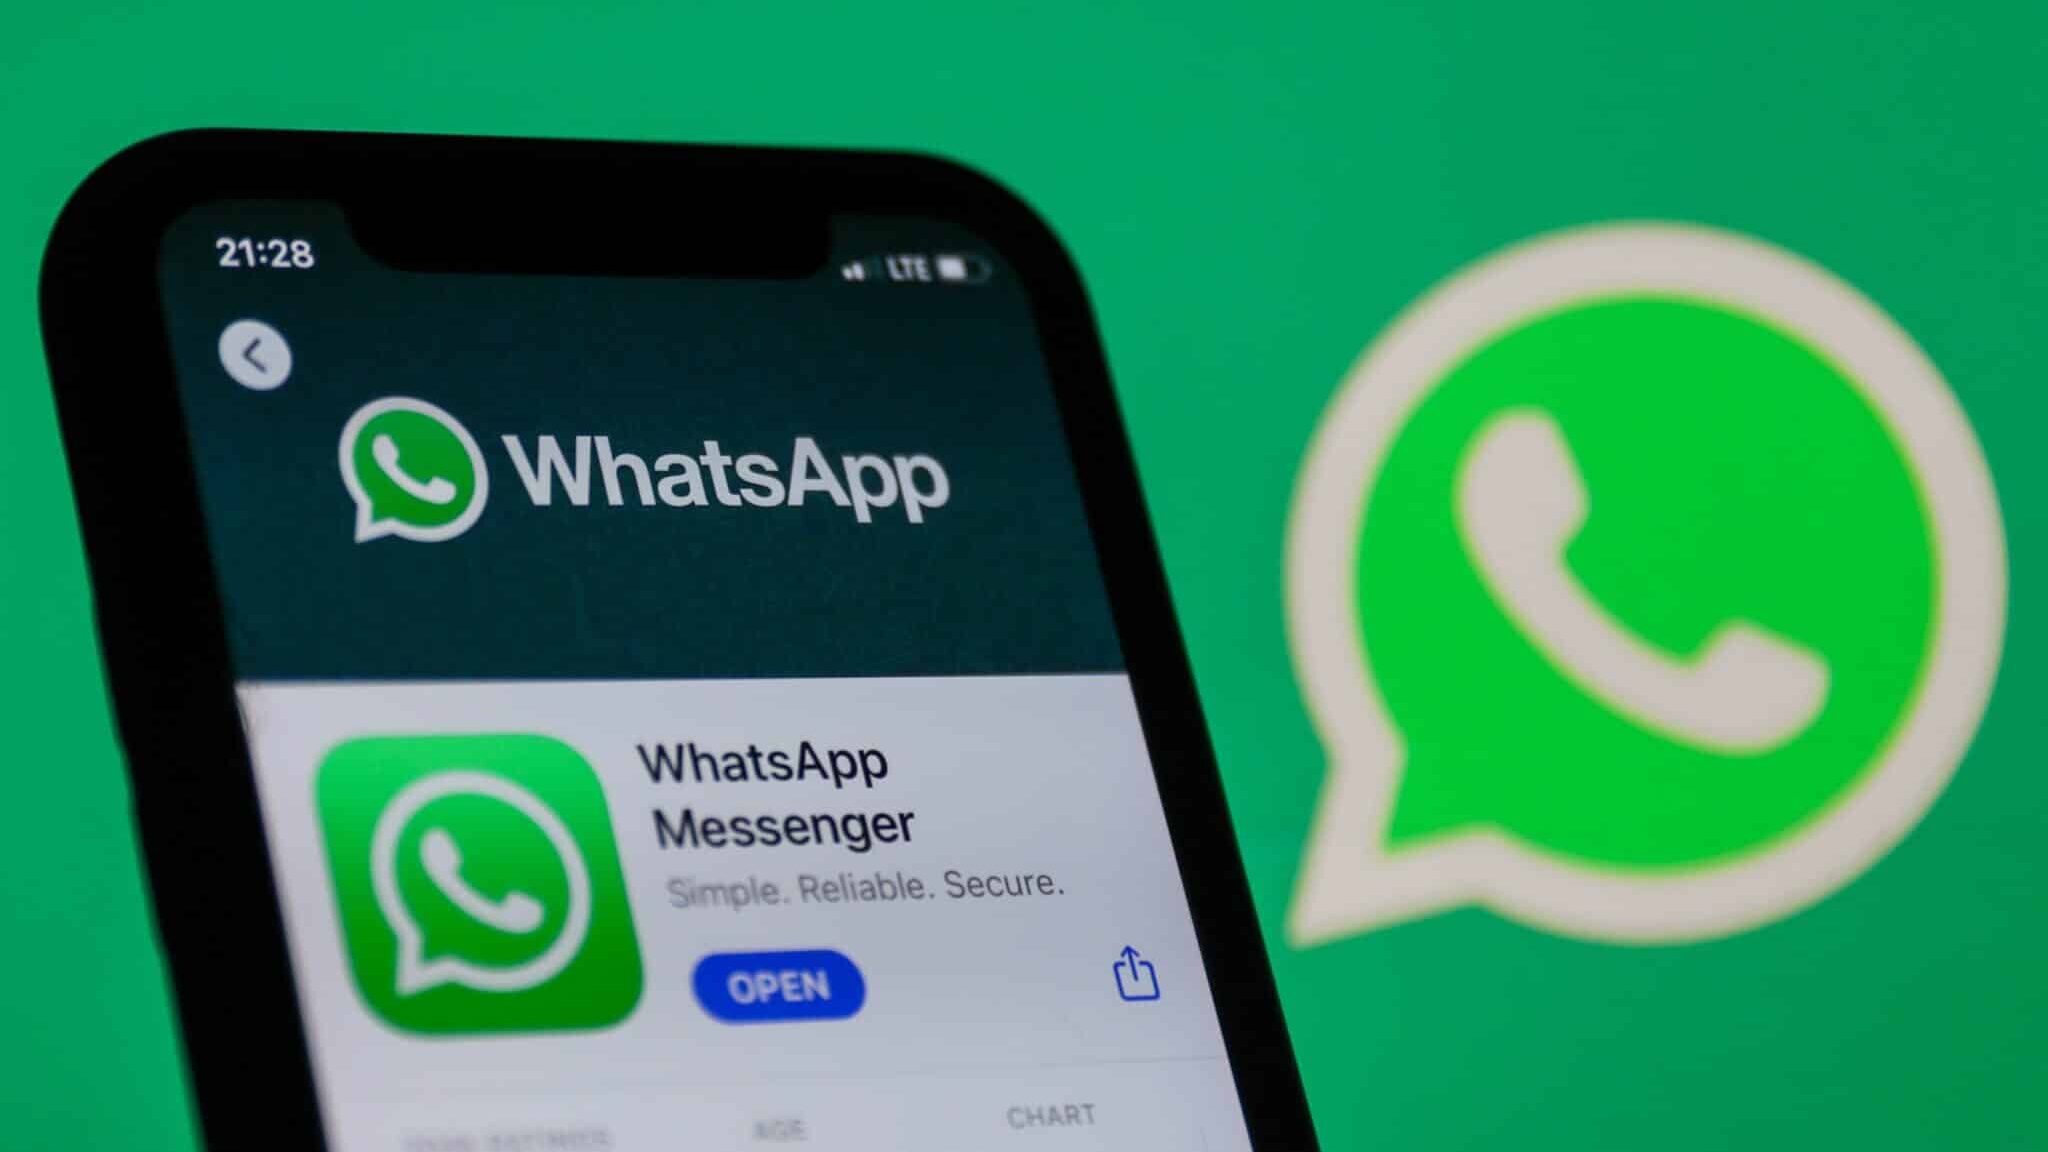 Vuoi lasciare un gruppo WhatsApp senza farlo sapere agli altri? Da ora puoi!